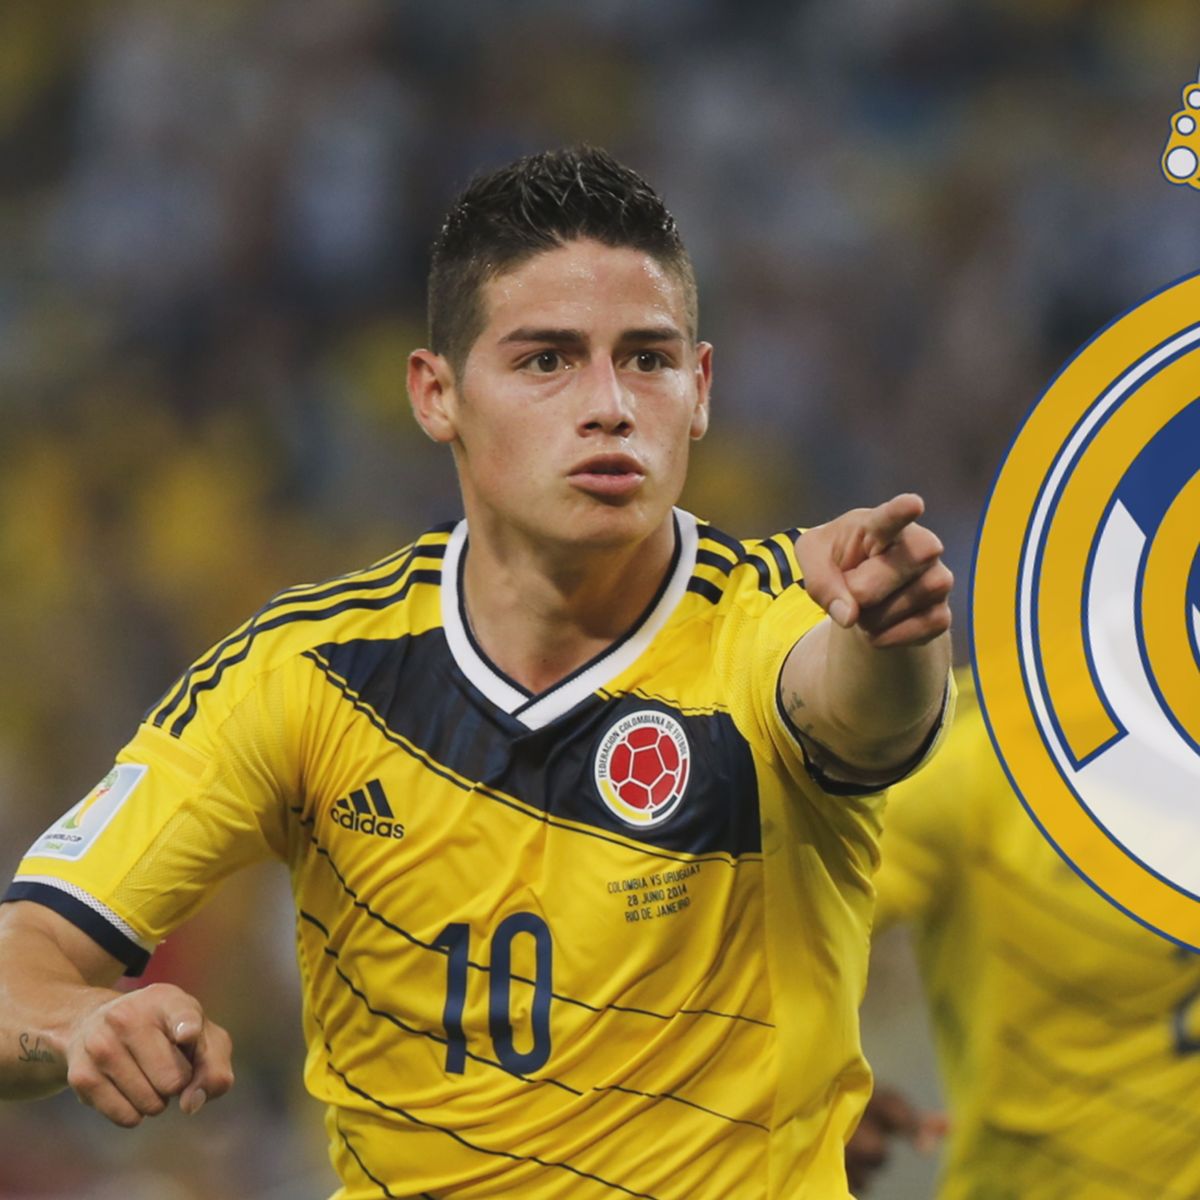 bedelaar wees onder de indruk Deskundige Real Madrid confirm signing of James Rodriguez - Eurosport